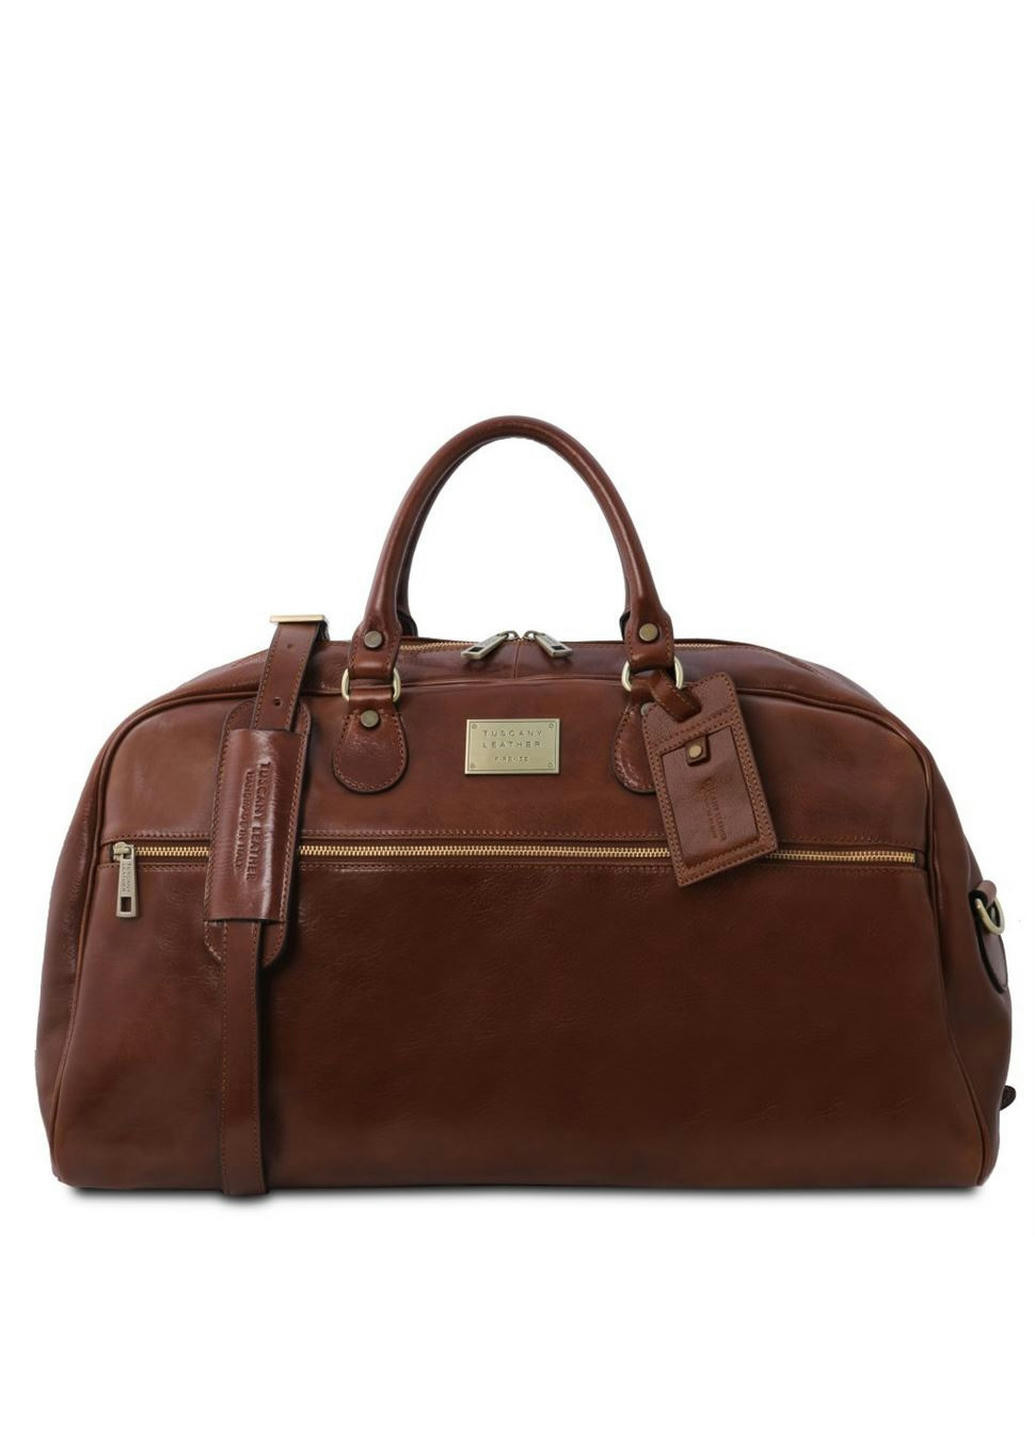 Дорожная кожаная сумка - Большой размер Tuscany TL141422 Voyager (Коричневый) Tuscany Leather (257657493)